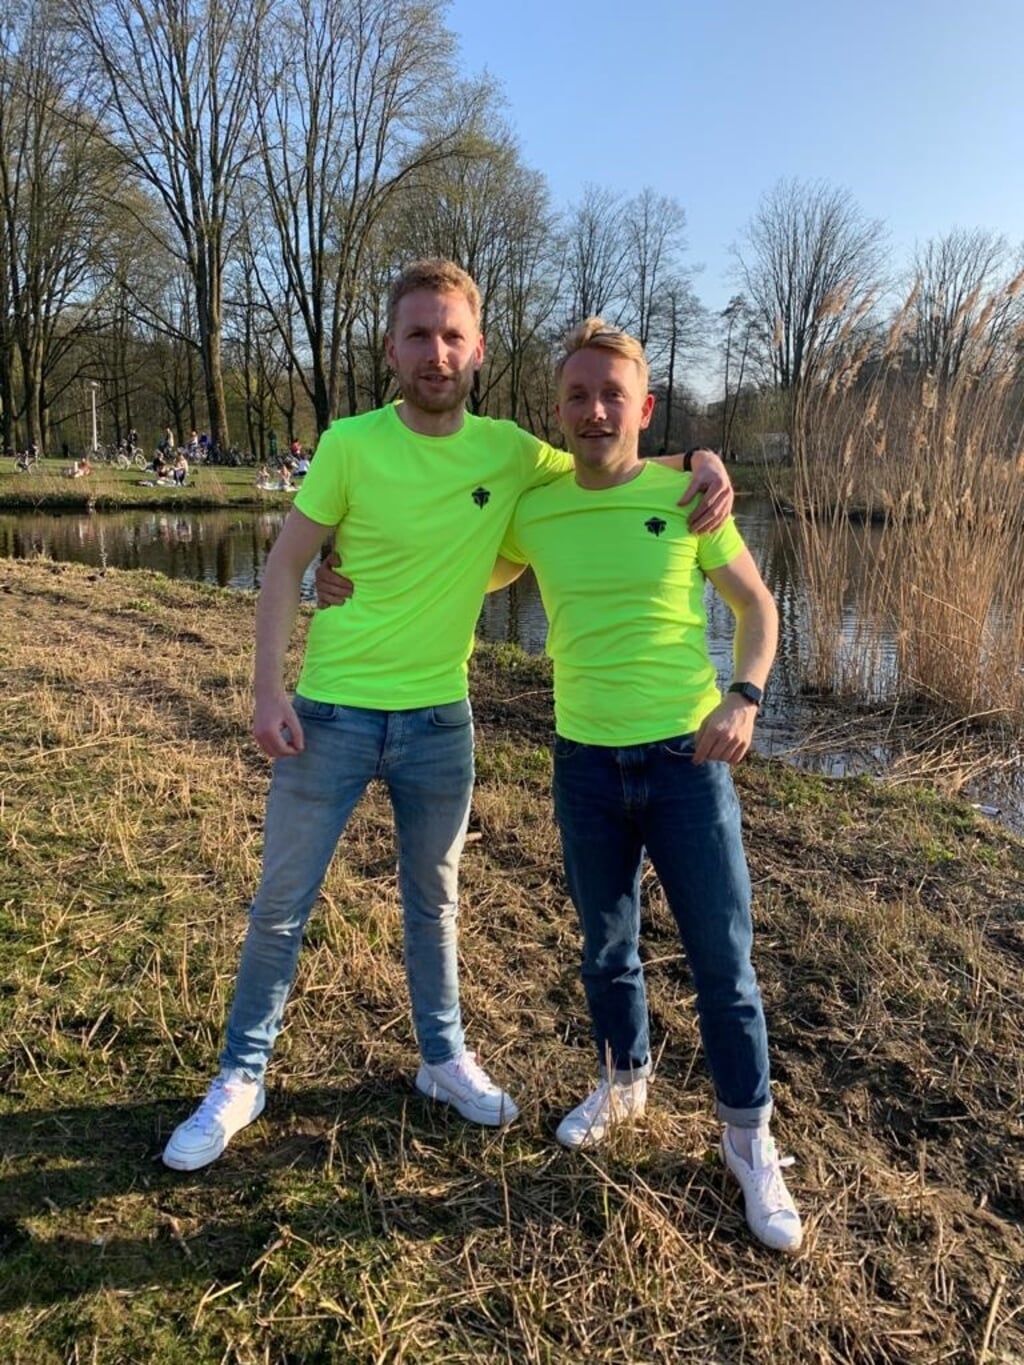  De broers Luuk (links) en Stef Traa liepen het afgelopen weekend in Liempde allebei twaalf keer vijf kilometer hard. (Foto: eigen collectie).